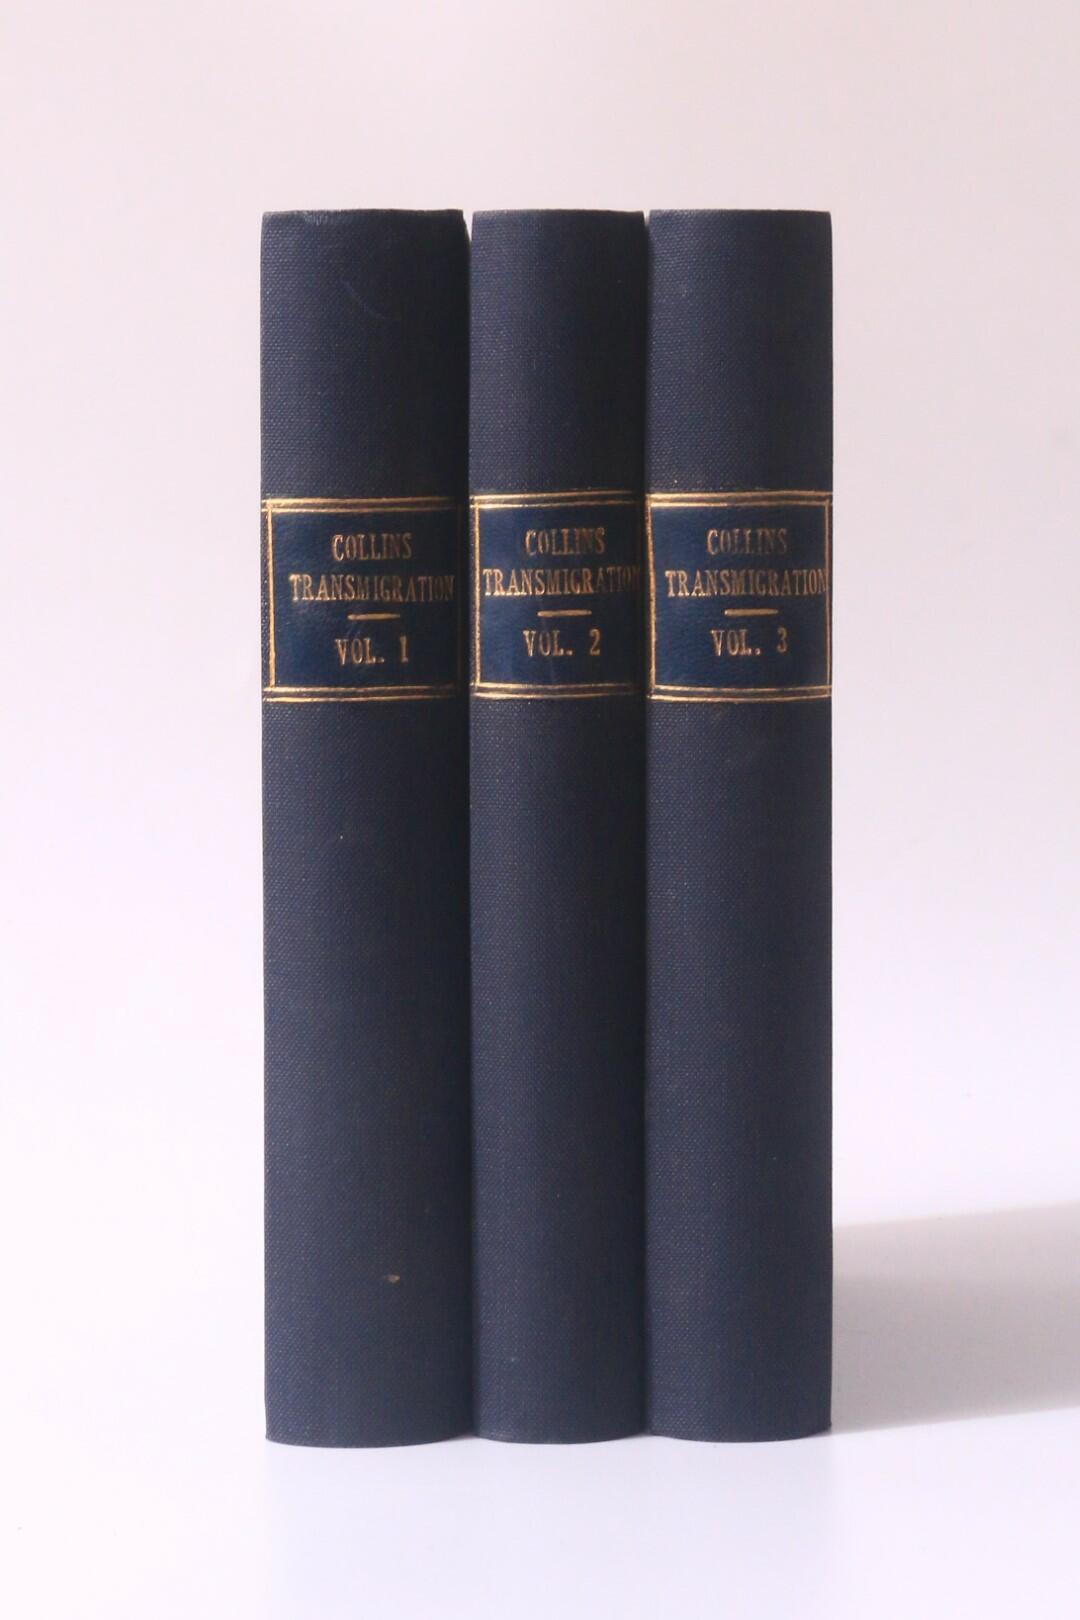 Mortimer Collins - Transmigration - Hurst & Blackett, 1874, First Edition.